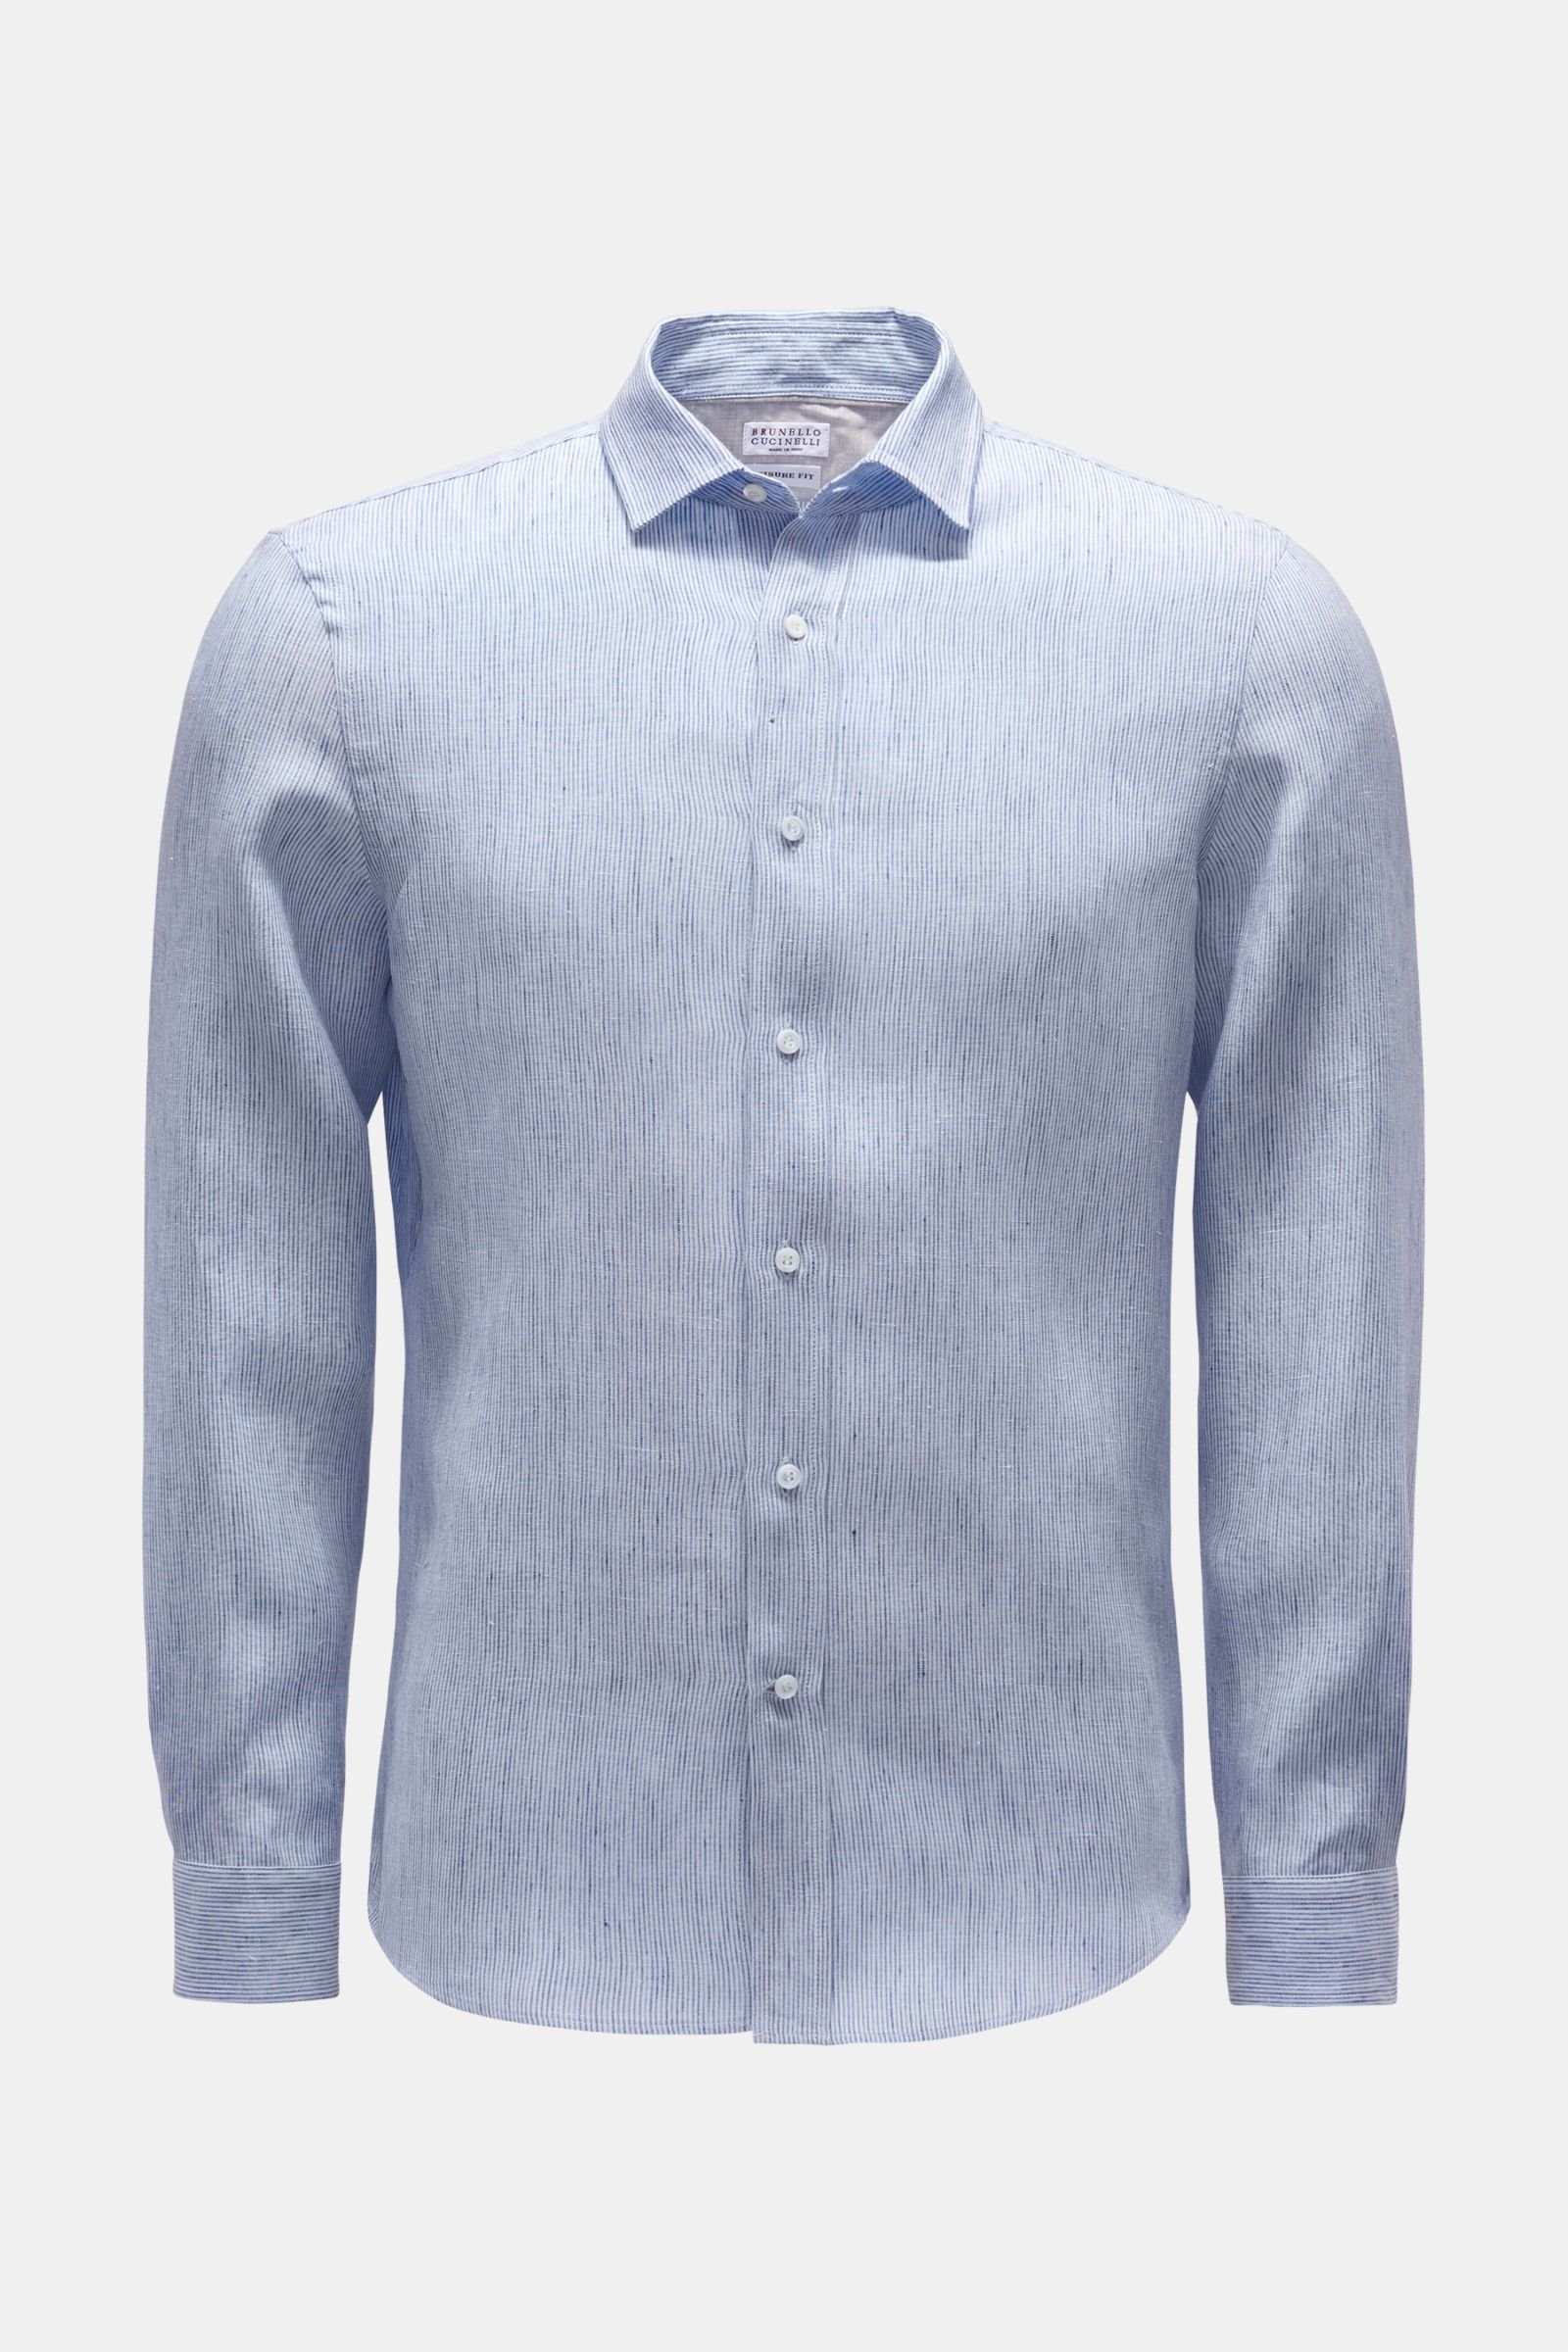 Linen shirt 'Leisure Fit' narrow collar dark blue/light blue striped